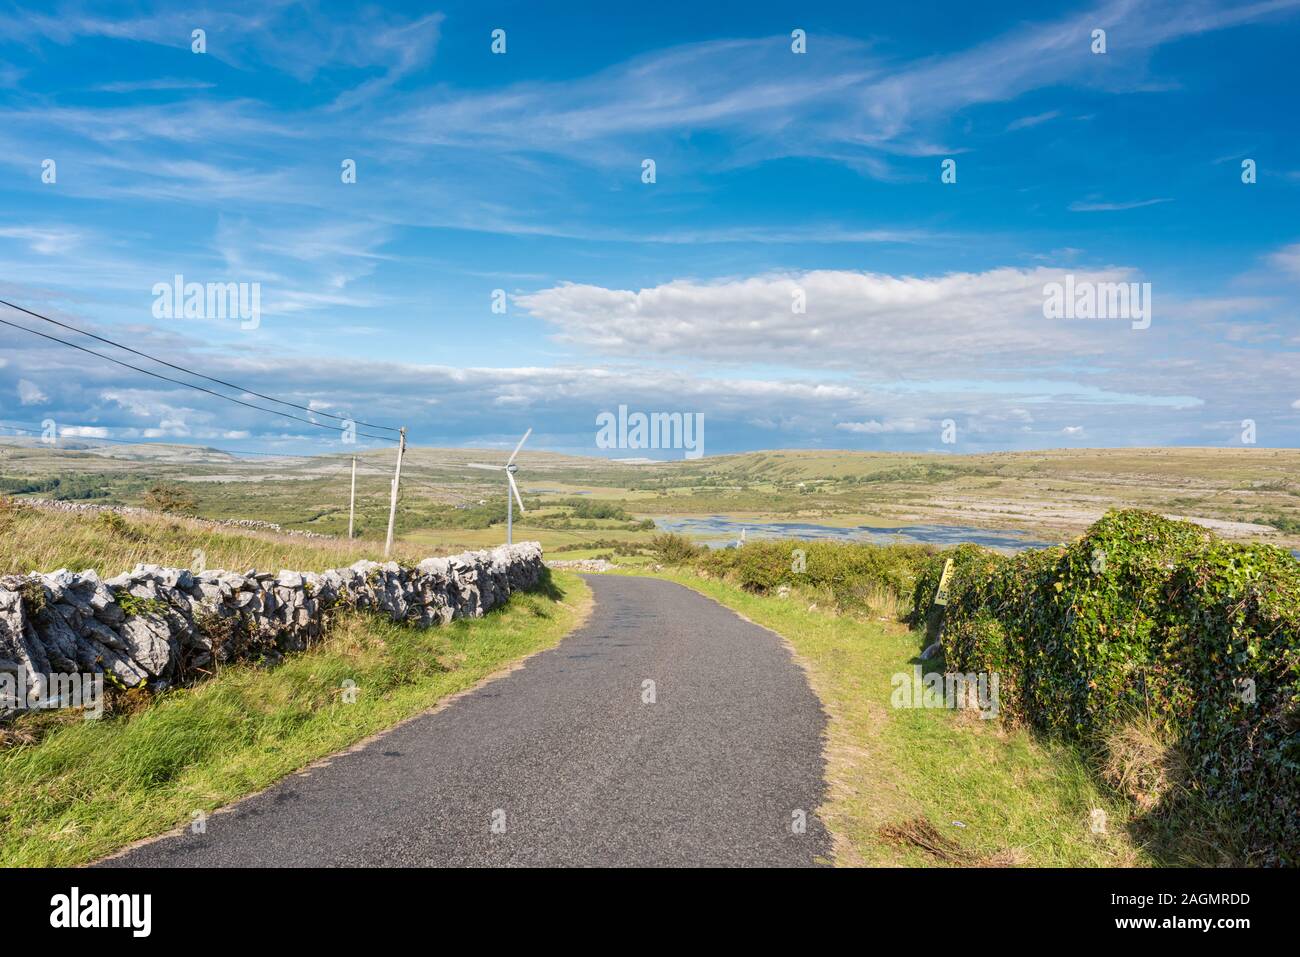 Route de campagne dans le Burren, Comté de Clare, Irlande avec la dépression de Carran, une énorme doline ou dépression karstique avec un turlough (lac éphémère) Banque D'Images